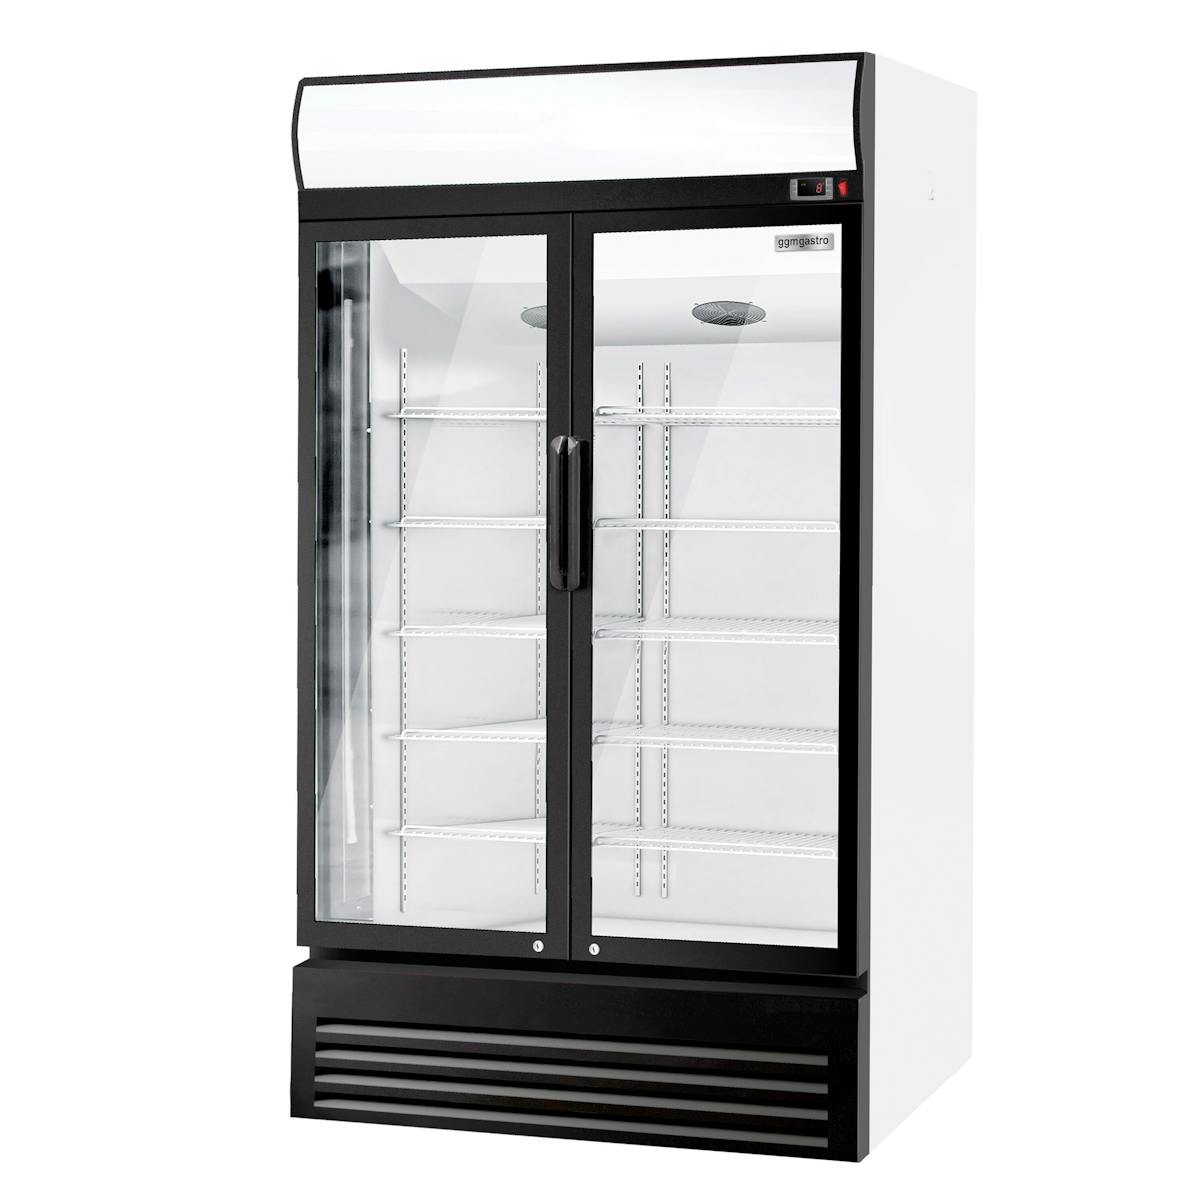 Lednice na nápoje - 880L - se 2 skleněnými dveřmi